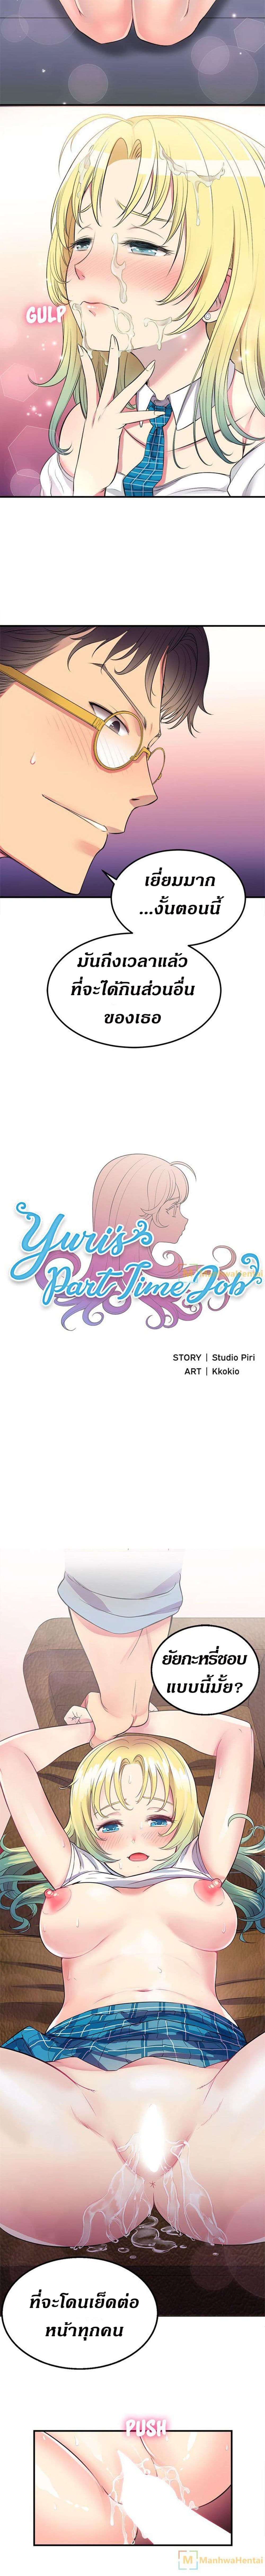 Yuri’s Part Time Job 2 (8)